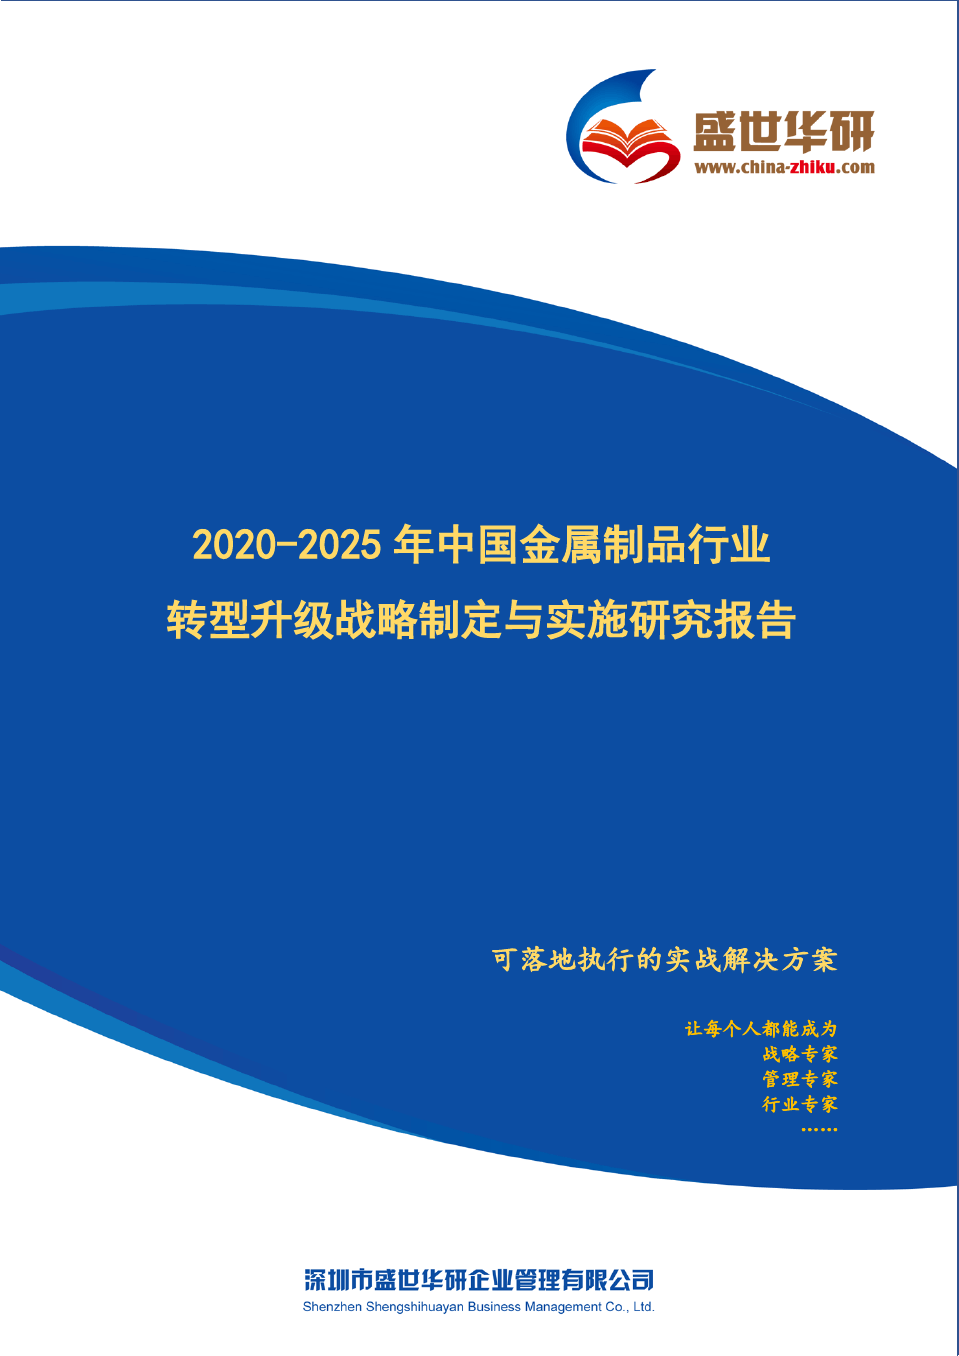 【完整版】2020-2025年中国金属制品行业转型升级战略制定与实施研究报告